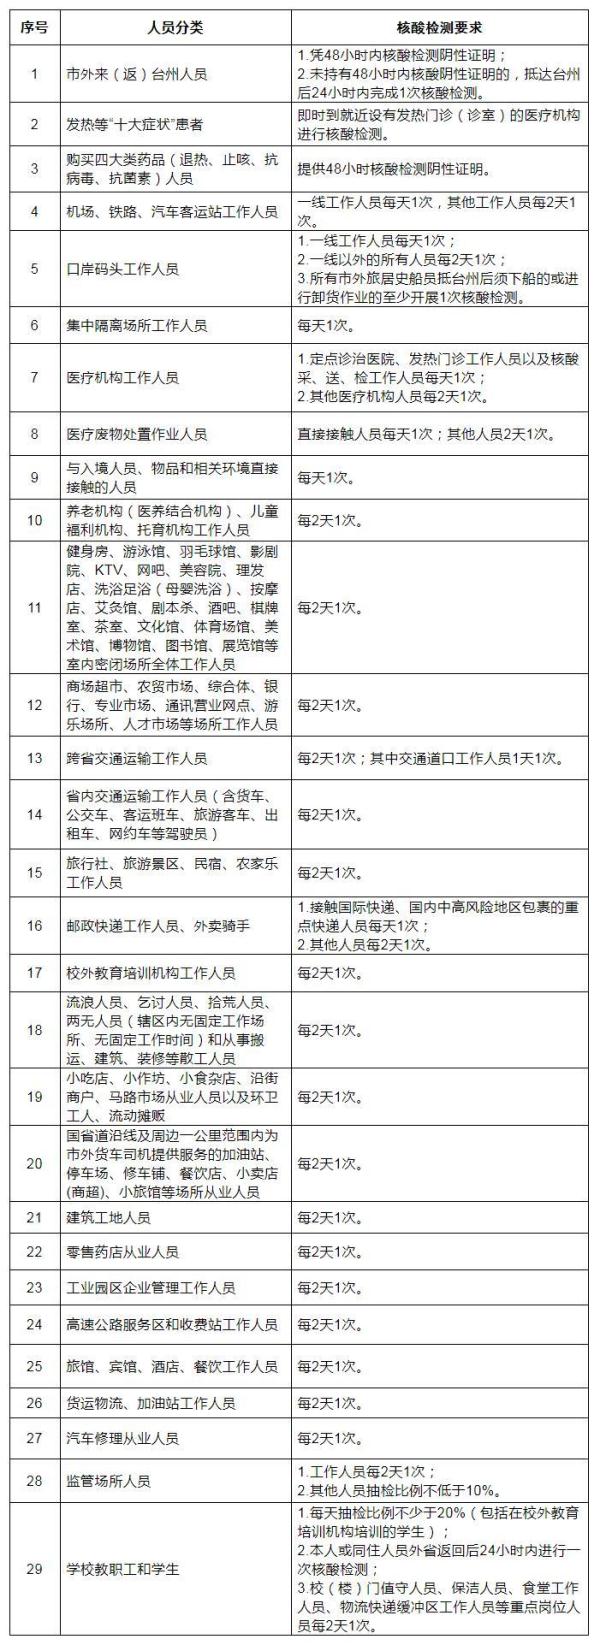 浙江台州：所有台州市内人员每72小时内应自觉完成至少1次核酸检测